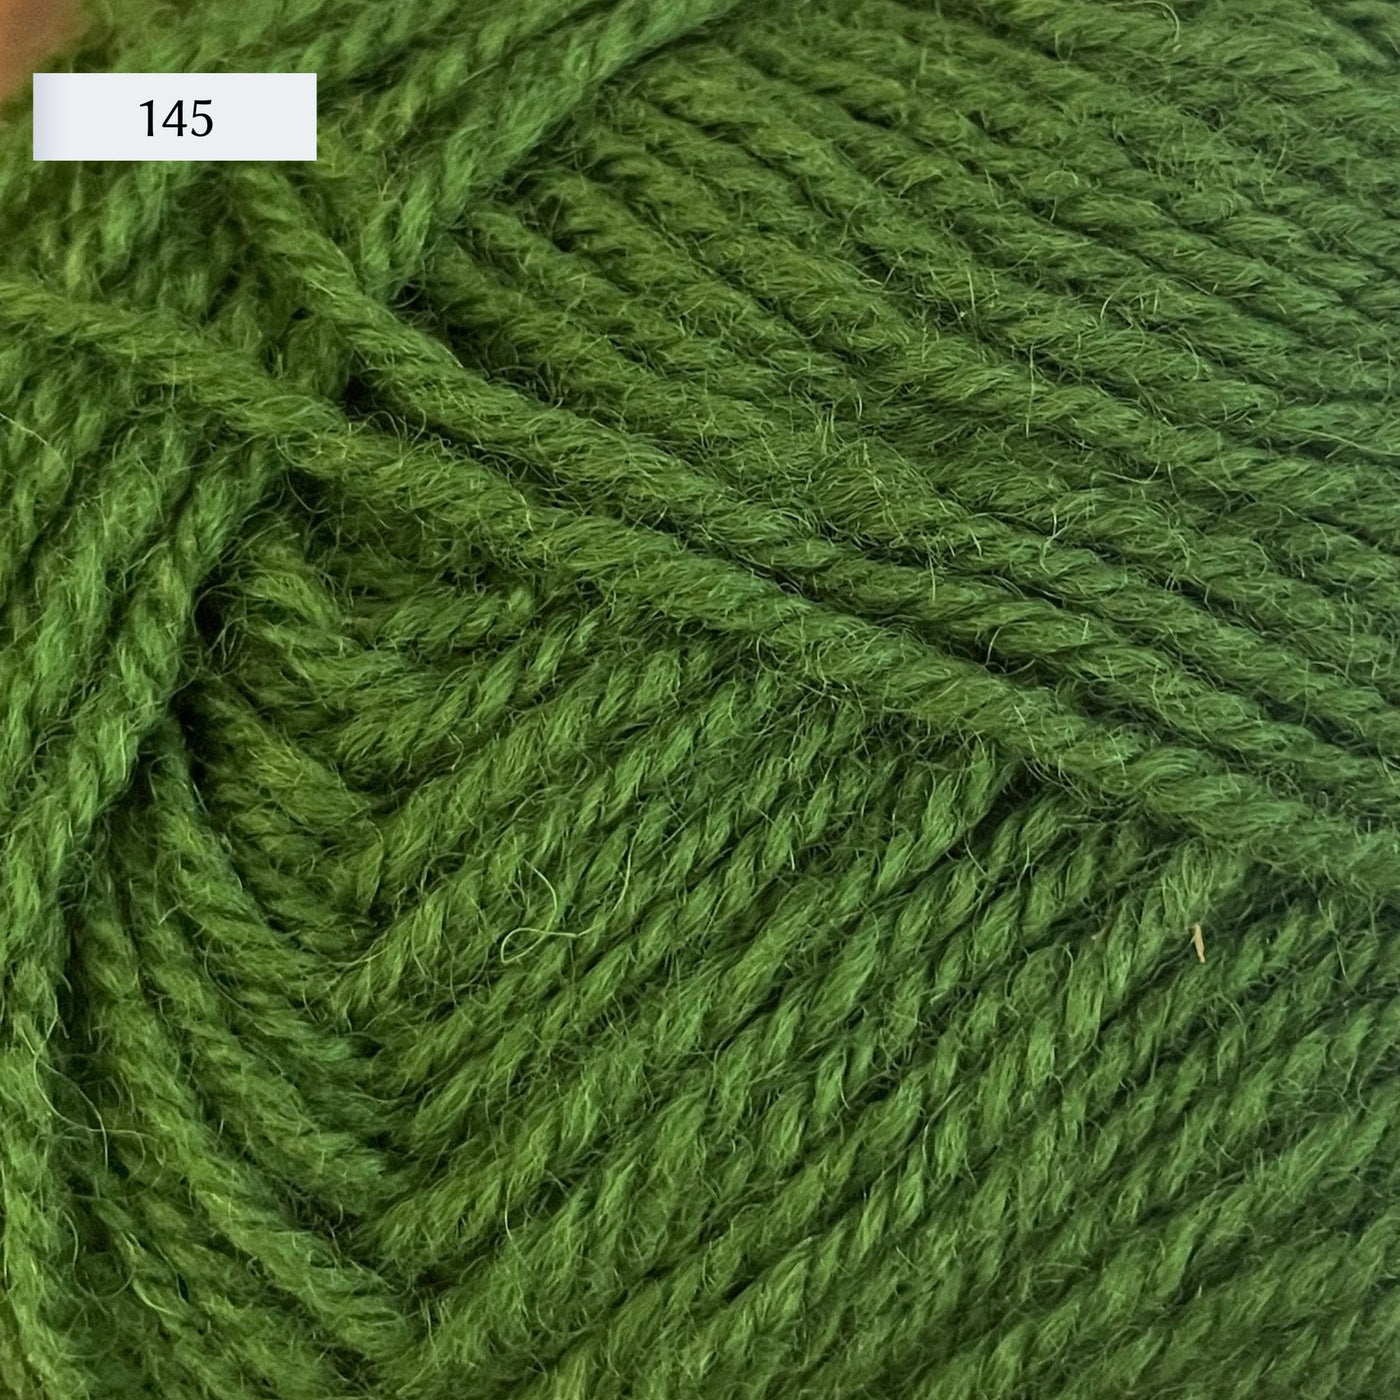 Rauma Strikkegarn, DK weight yarn, in color 145, bright grass green